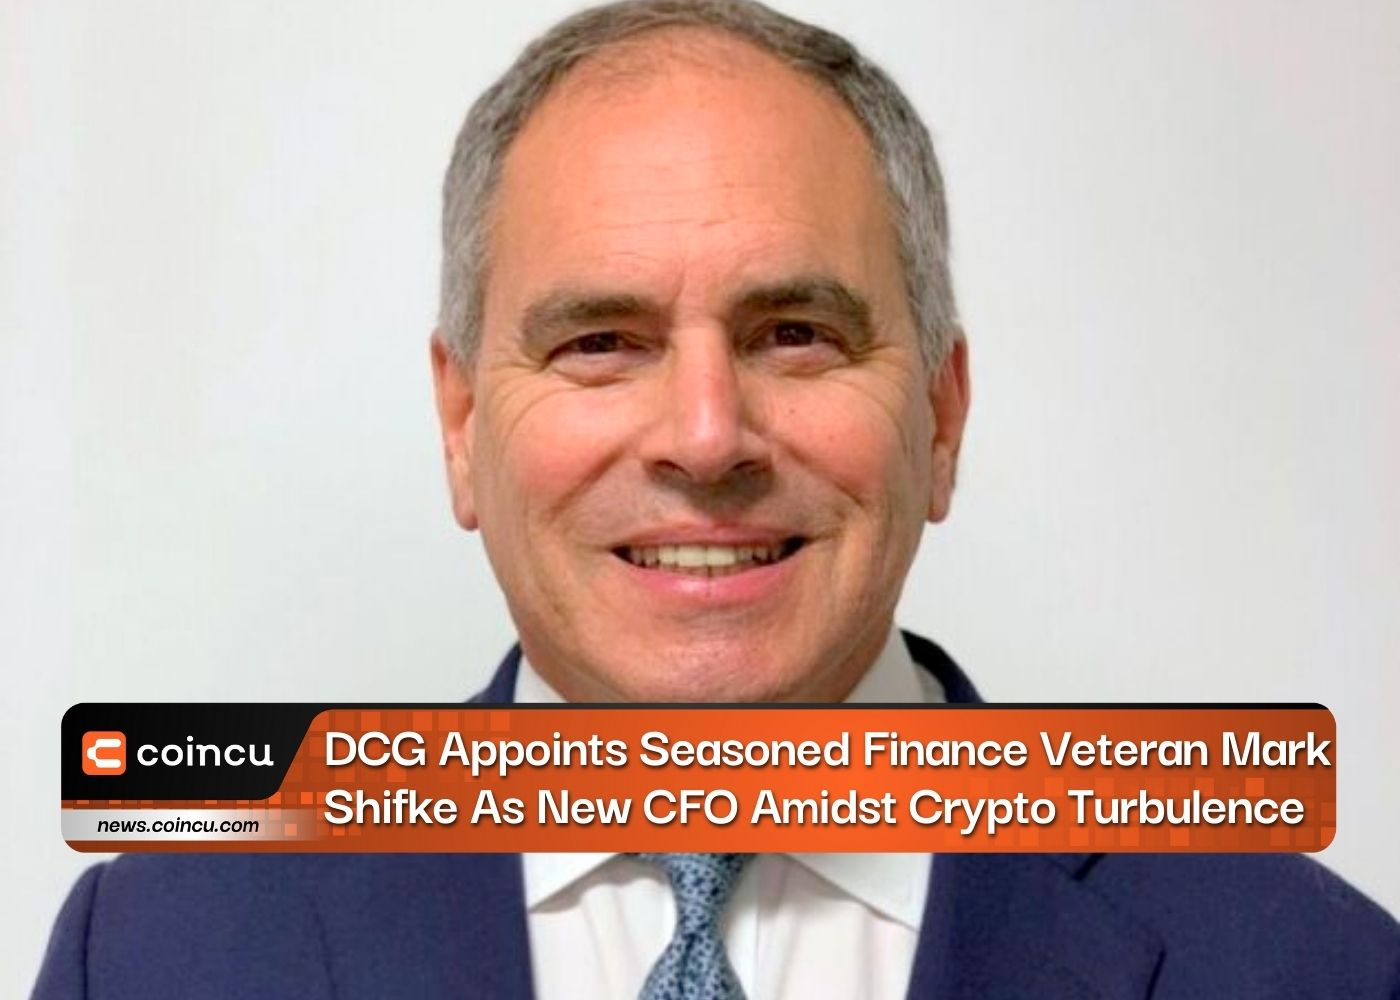 DCG Appoints Seasoned Finance Veteran Mark Shifke As New CFO Amidst Crypto Turbulence